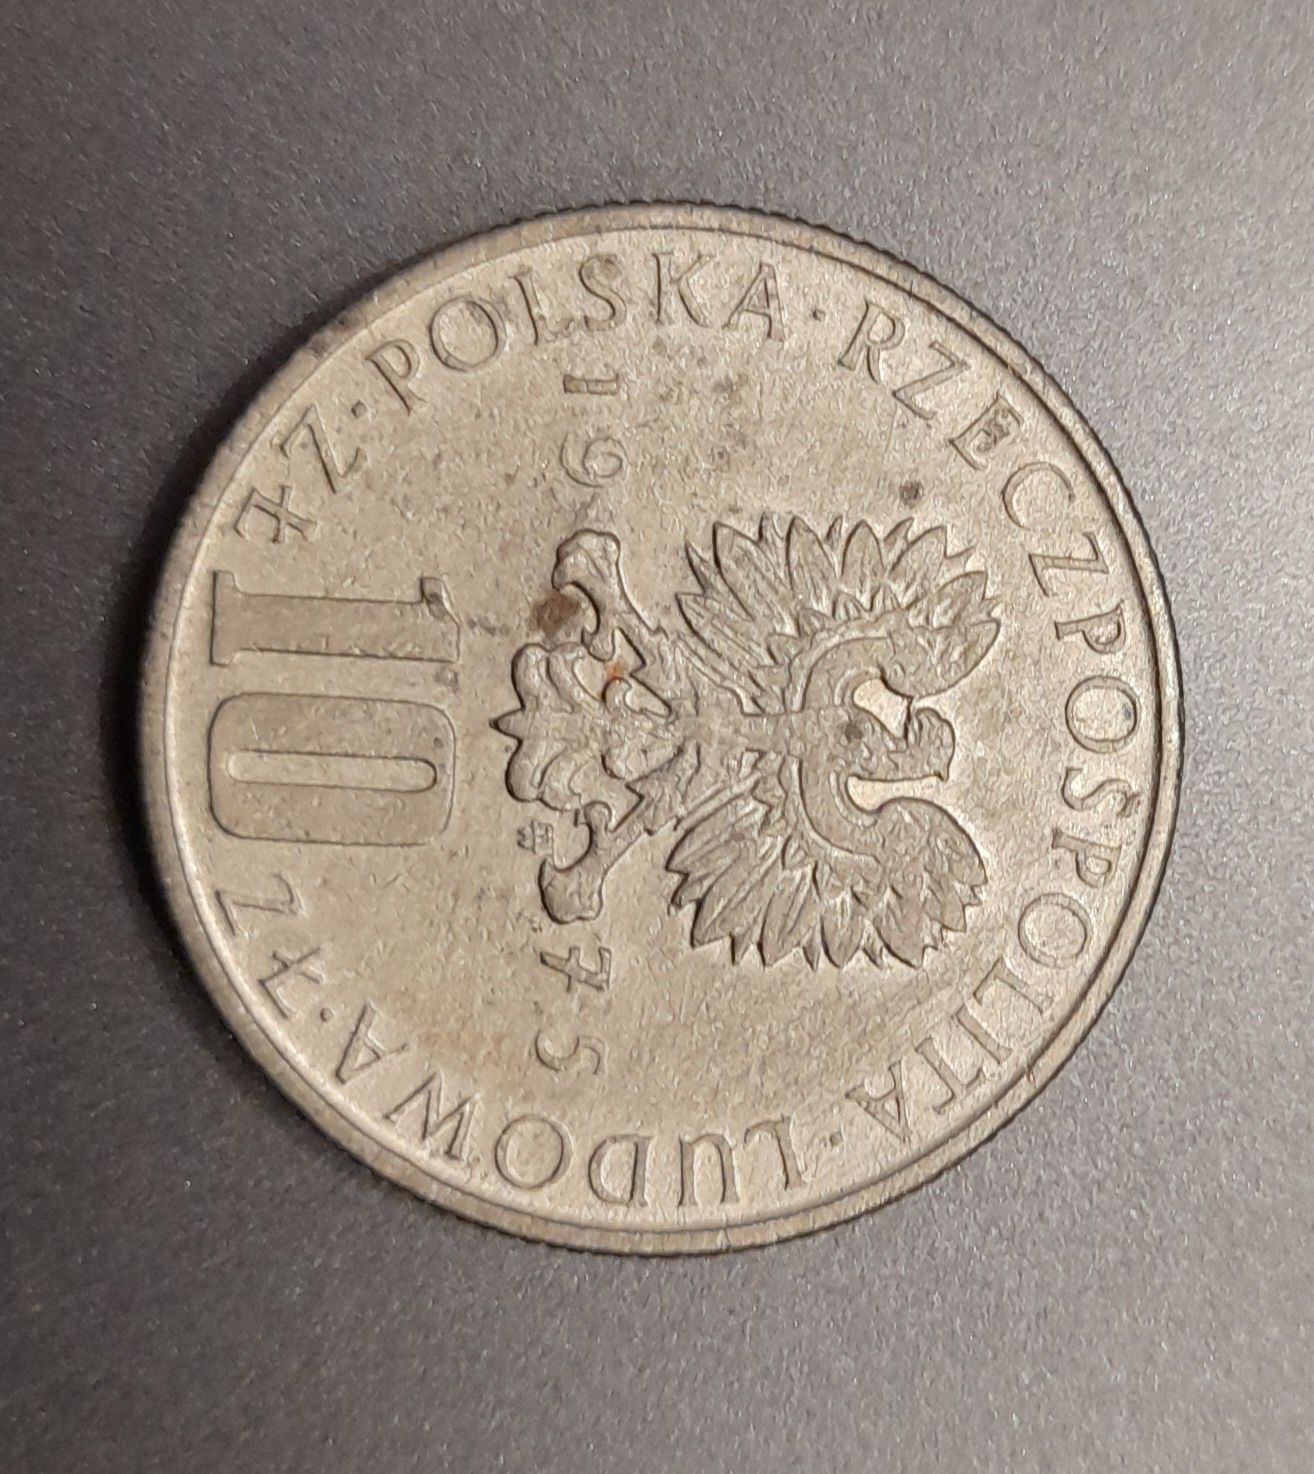 Moneta Bolesław Prus 1975r.